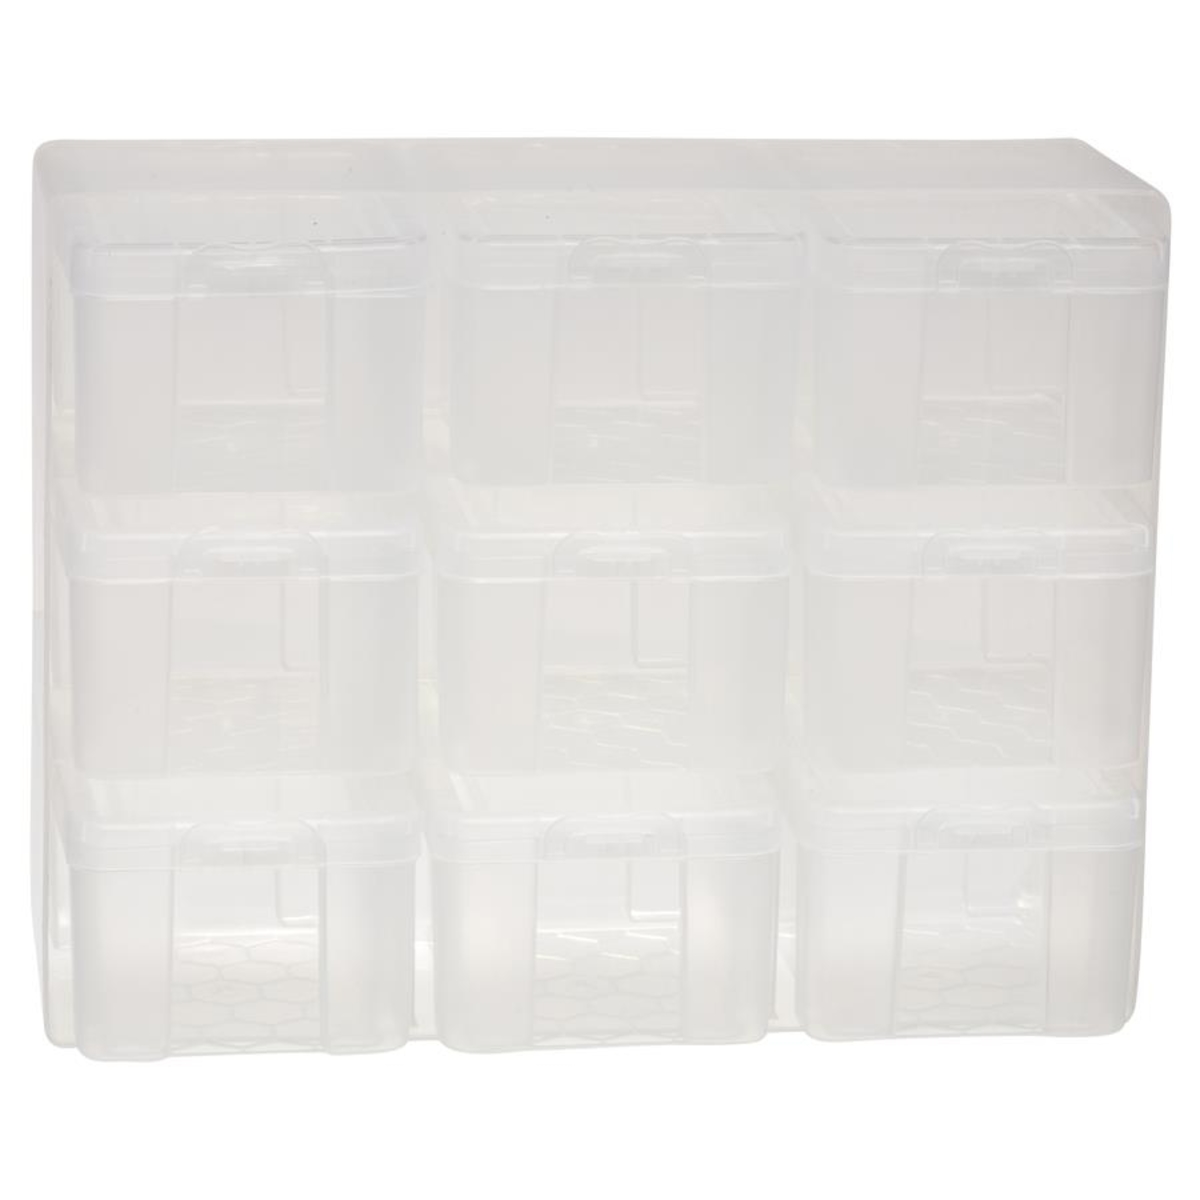 3 Tier Plastic Storage Unit - 9 Compartments